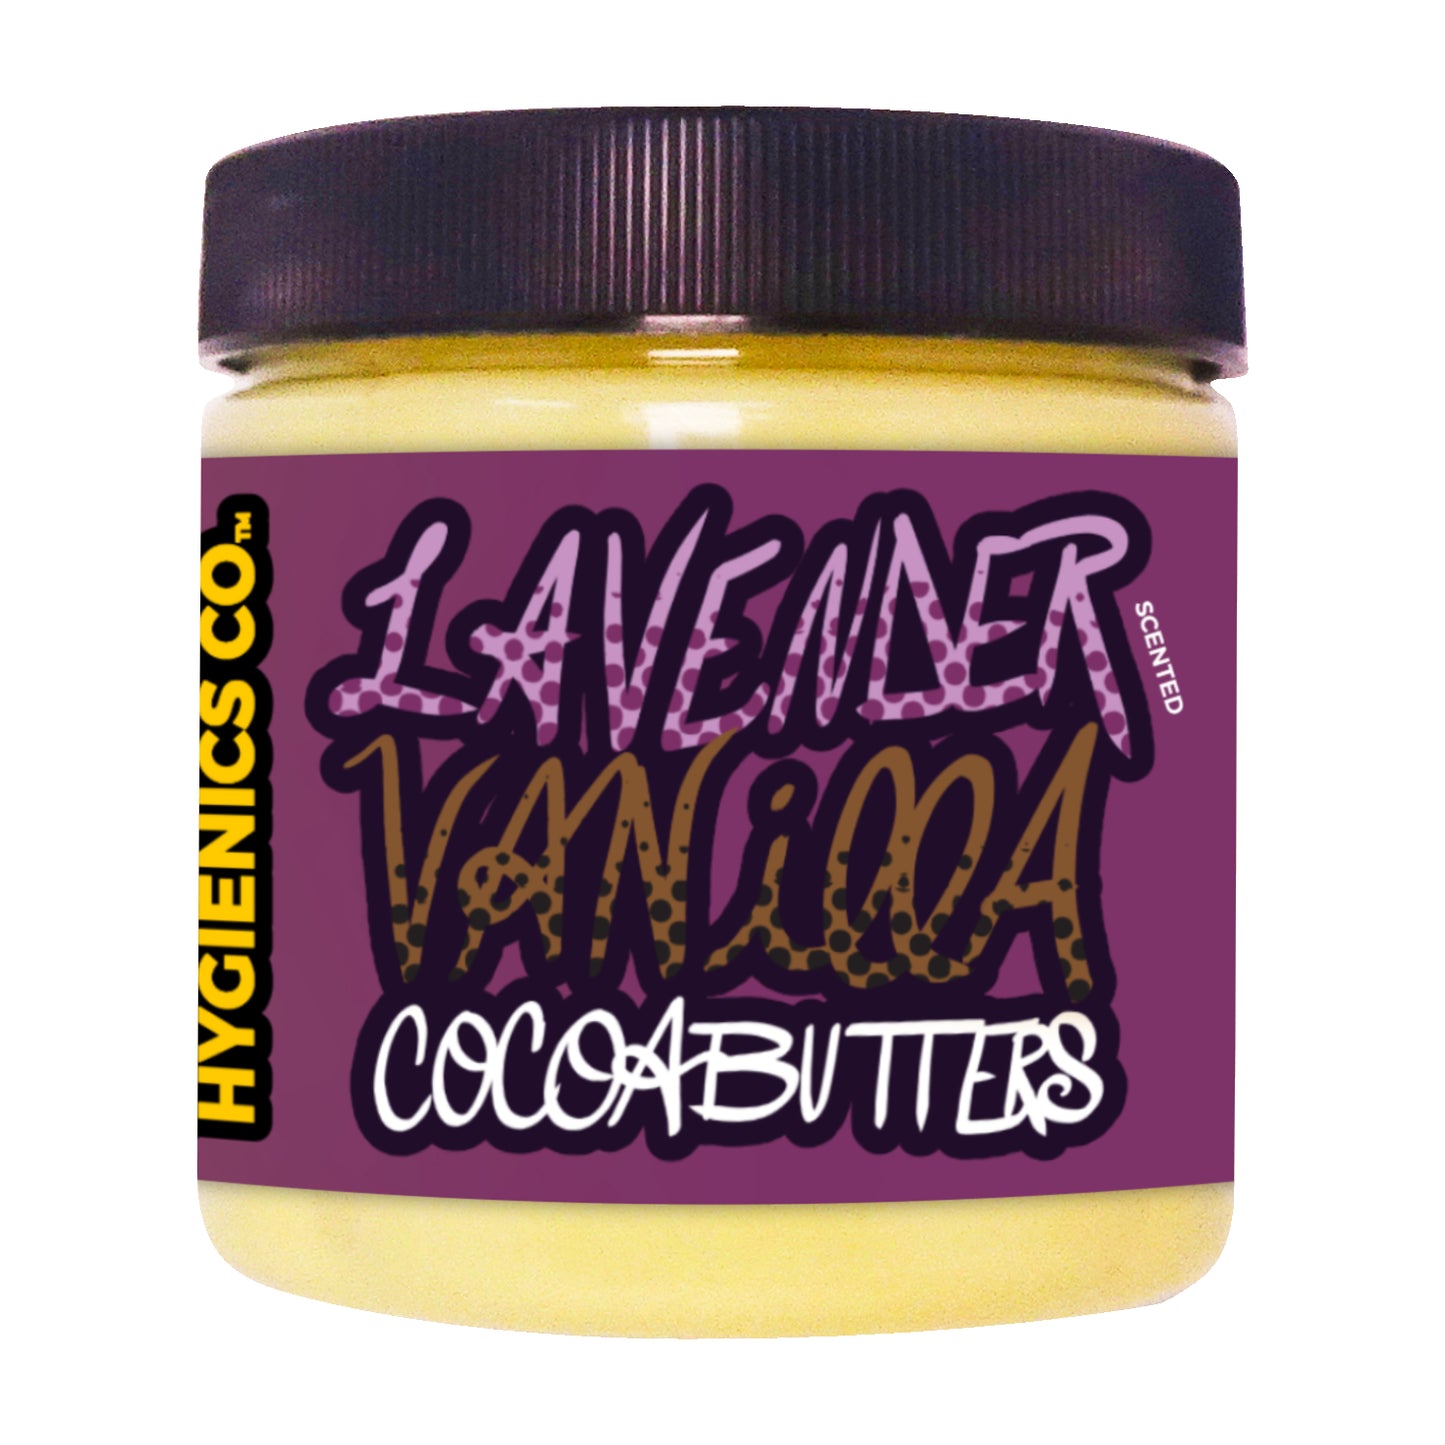 Lavender Vanilla Essential Cocoa Butters Body Moisturizer